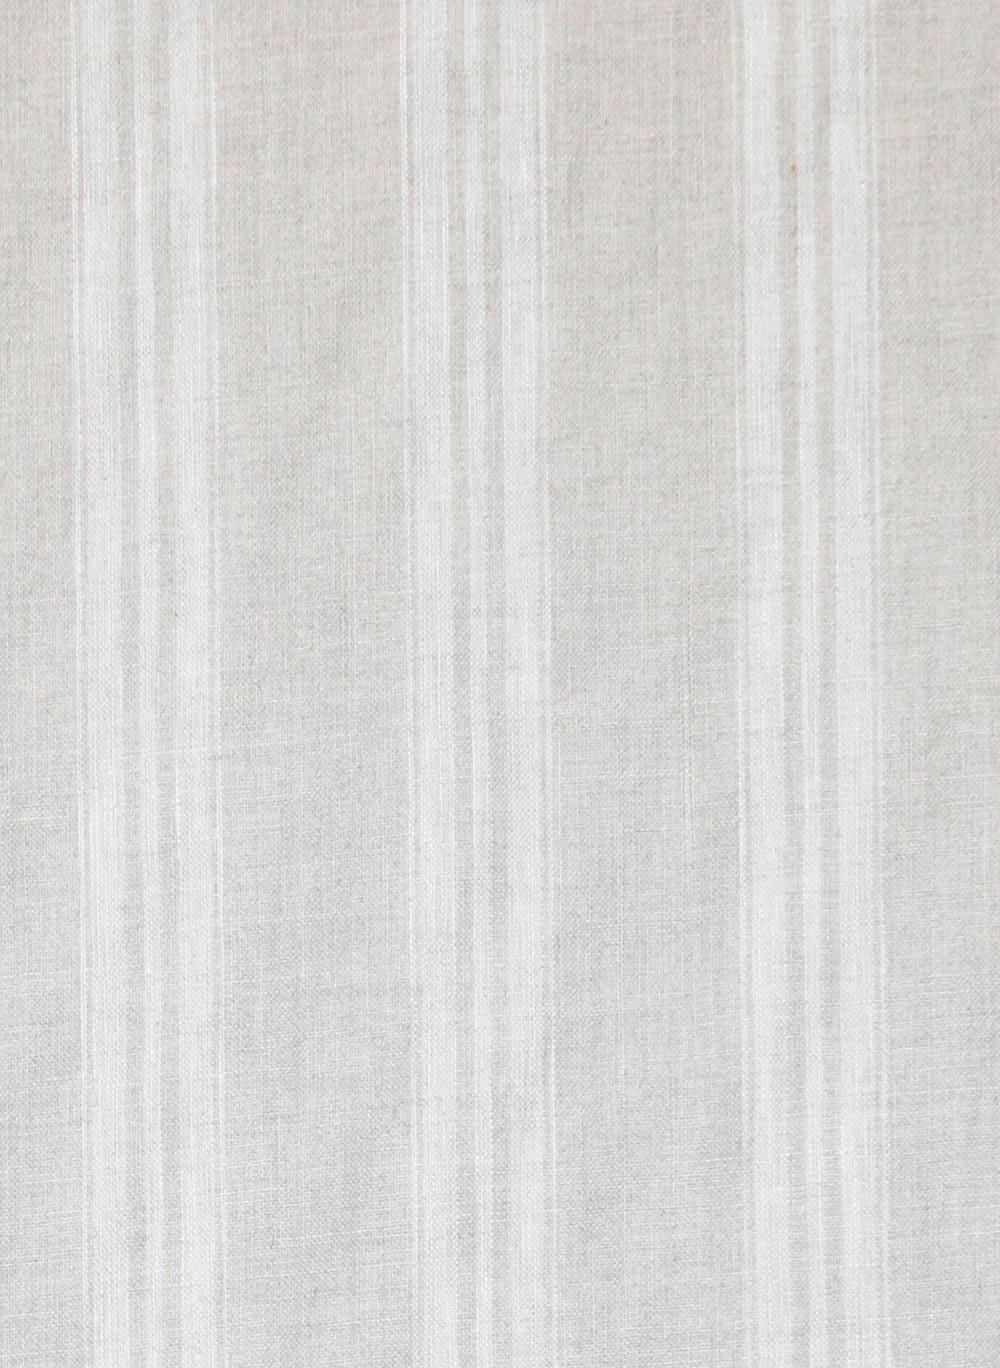 Stripe White – Kate Forman Designs